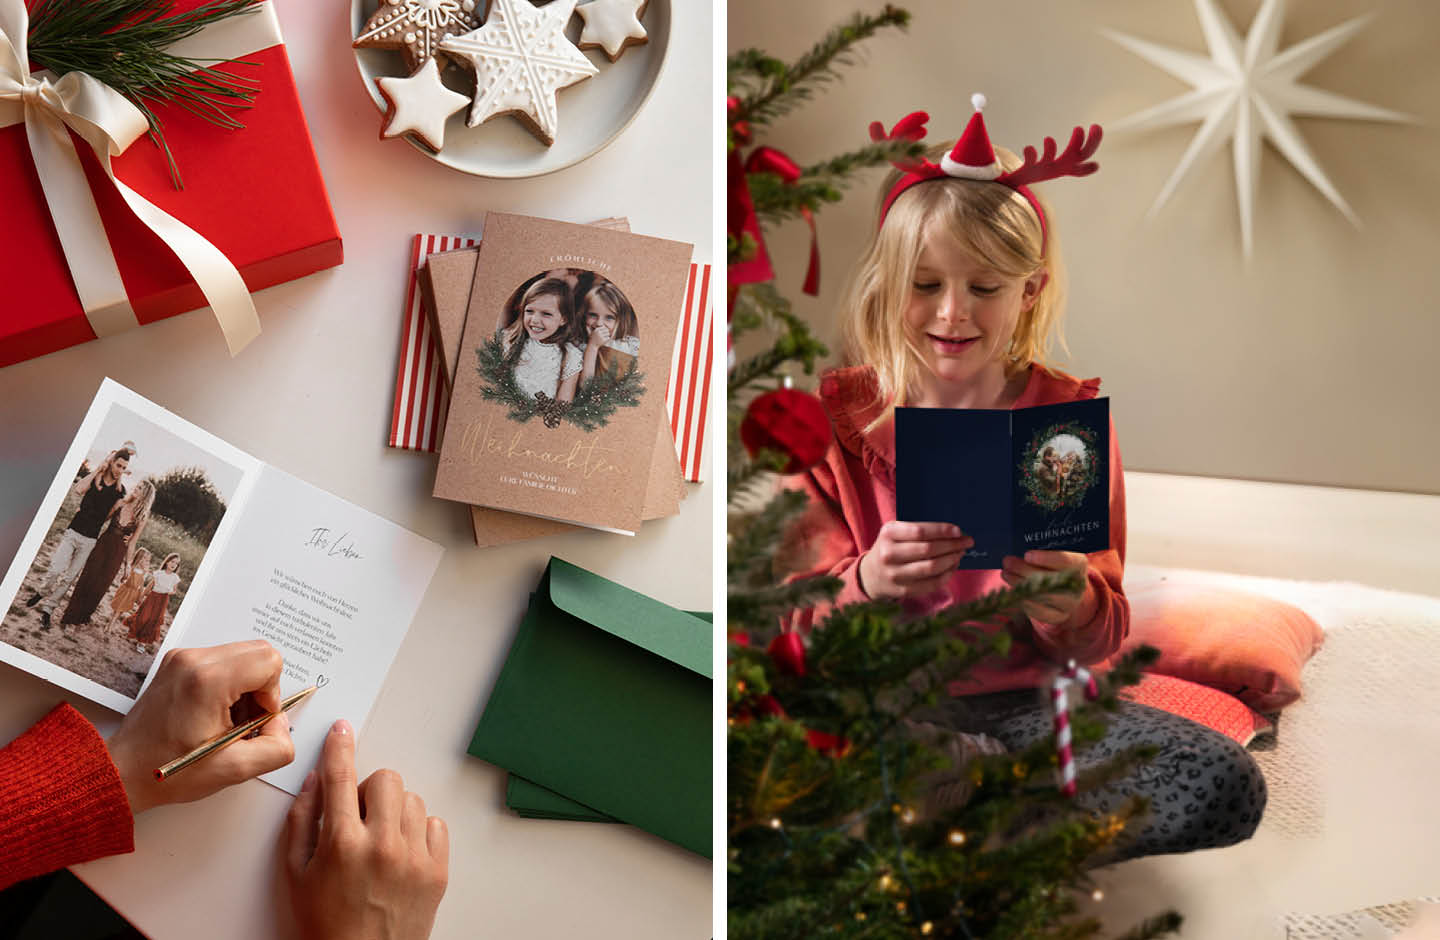 Weihnachtskarten werden mit Stift beschrieben. Mädchen in roten Pullover liest Weihnachtskarte.